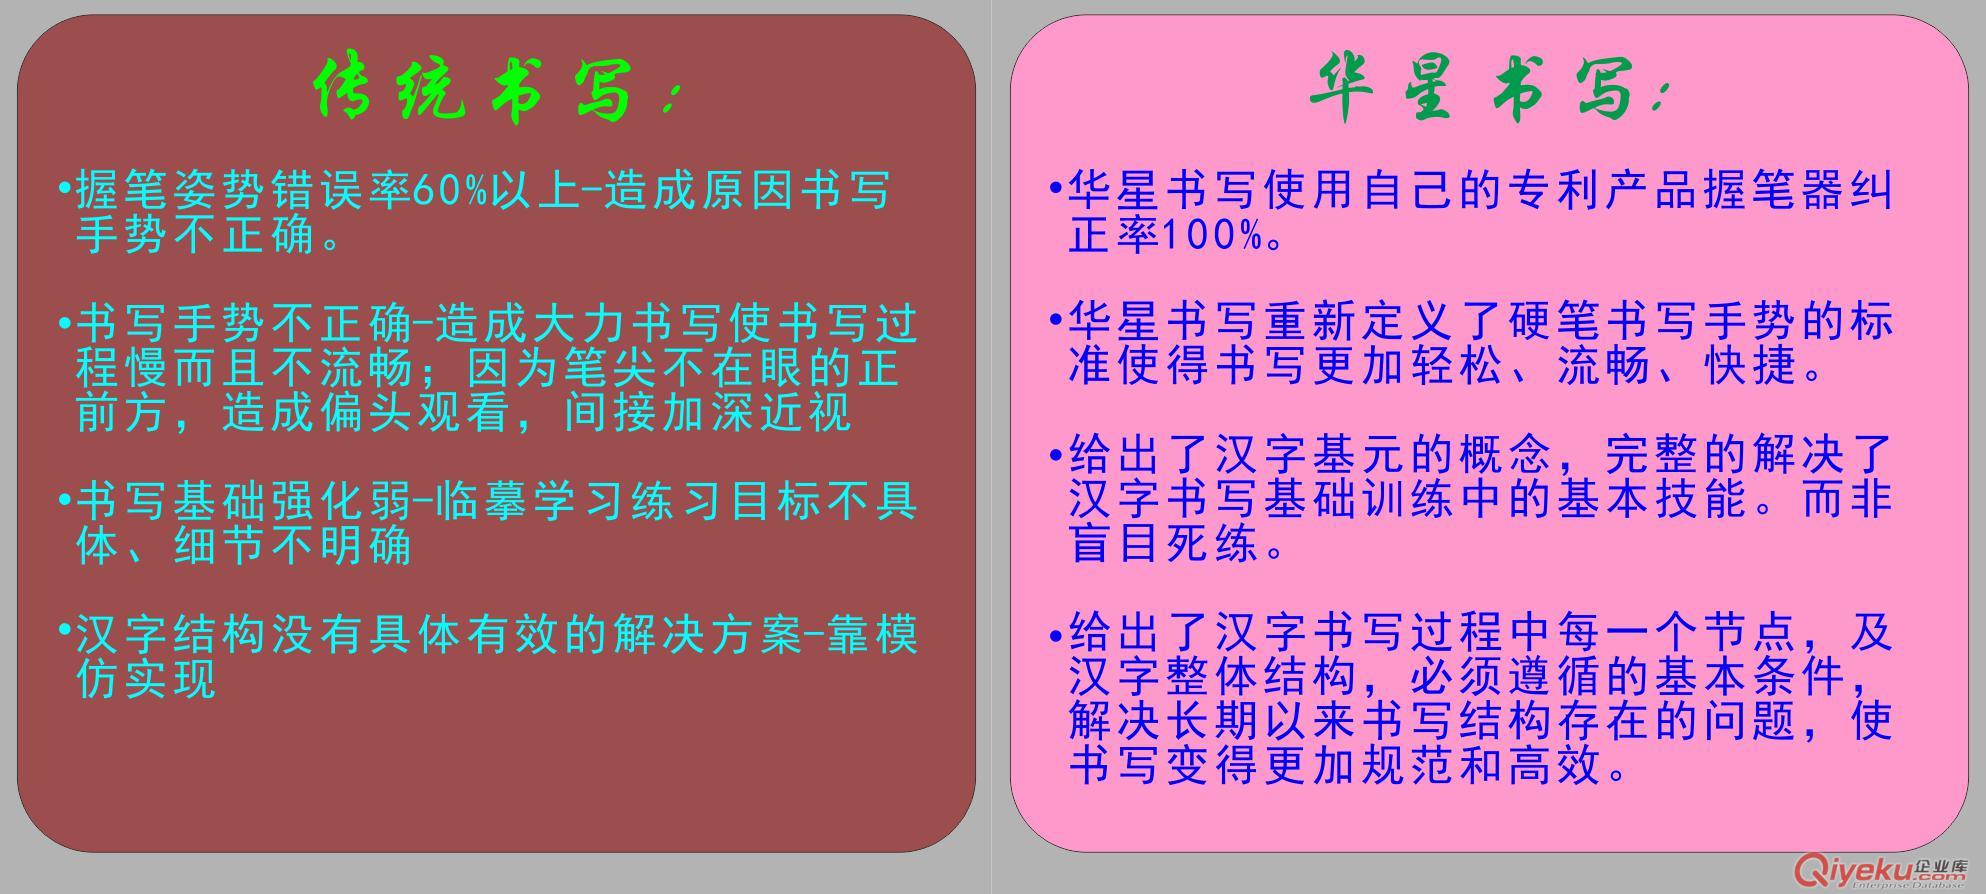 推动中文规范书写教育|汉字规范书写|解决汉字标准书写难题|华星汉字书写诚招经销商 